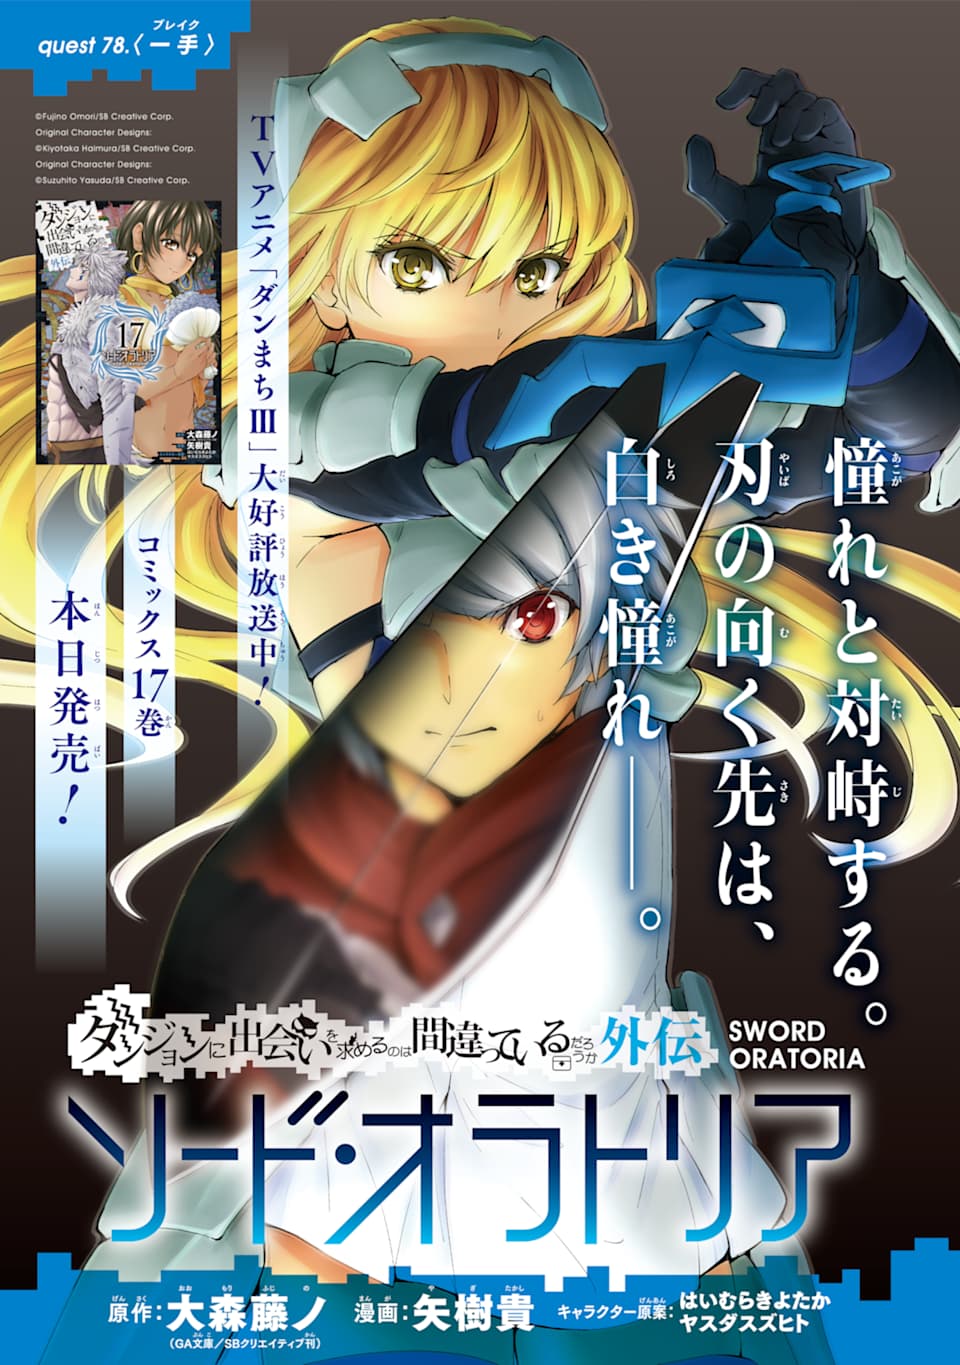 Dungeon ni Deai wo Motomeru no wa Machigatteiru Darou ka Gaiden: Sword  Oratoria #1 - Vol. 1 (Issue)